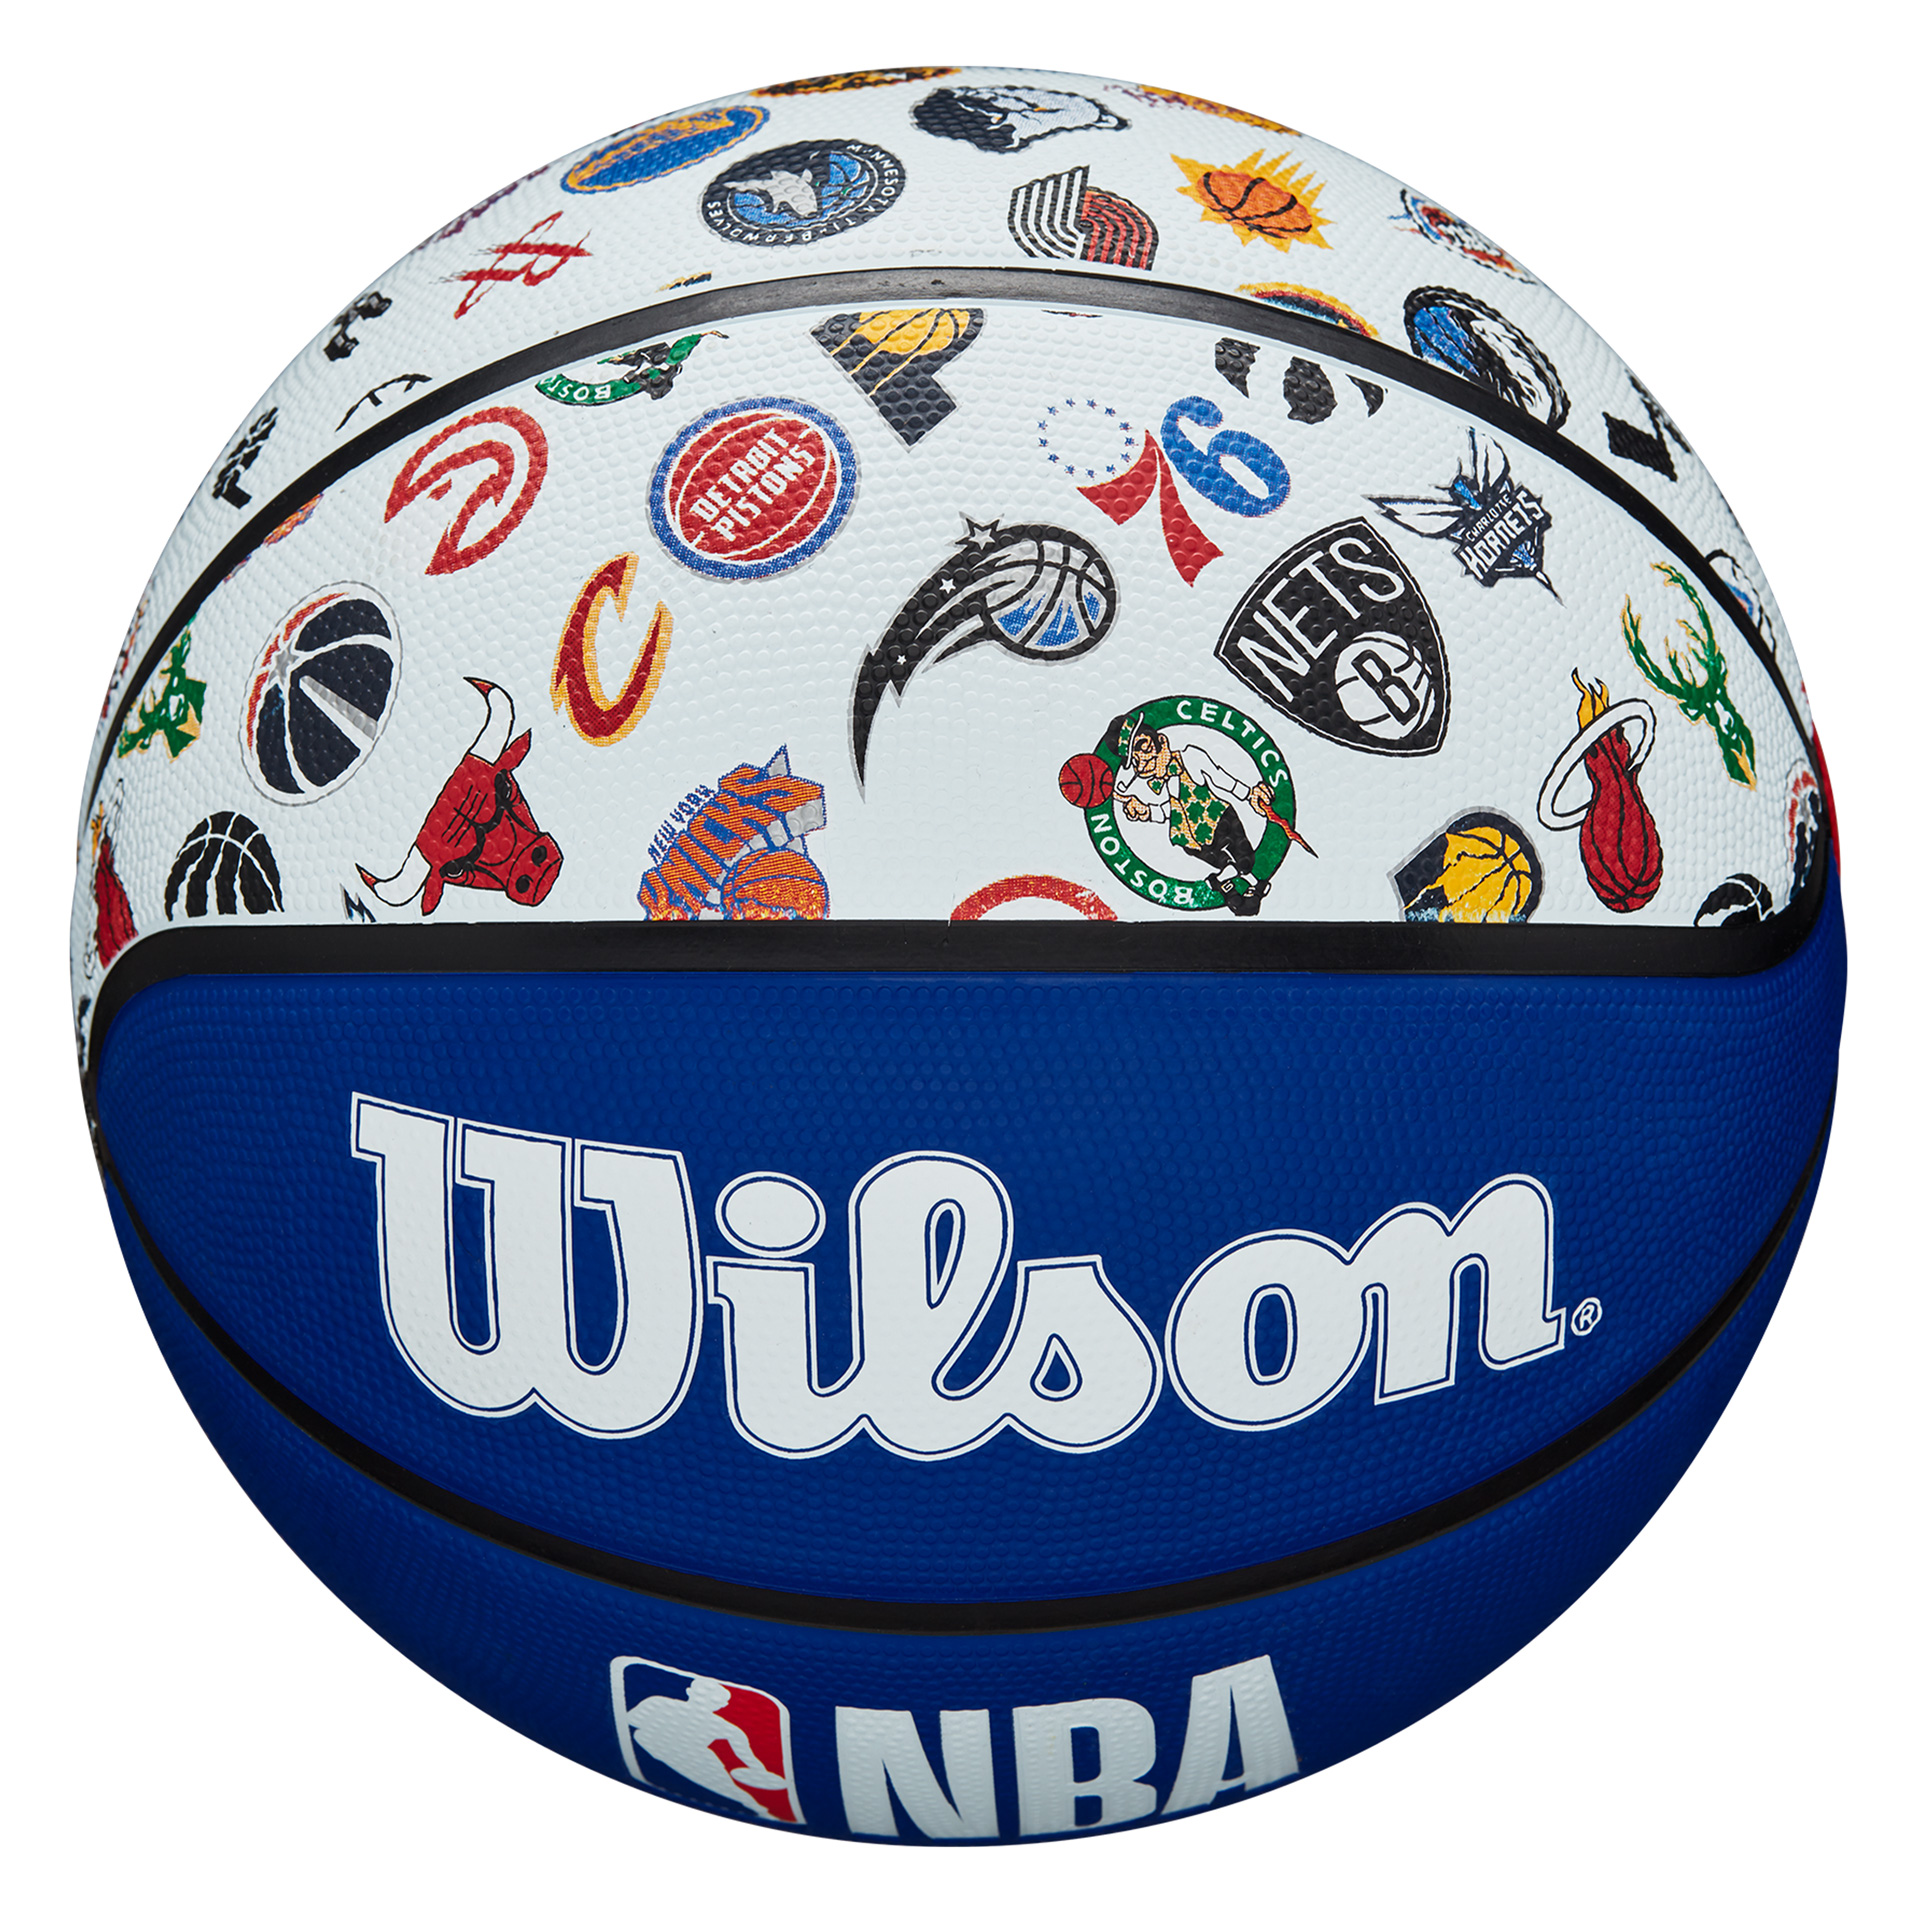 Balón baloncesto wilson nba all team